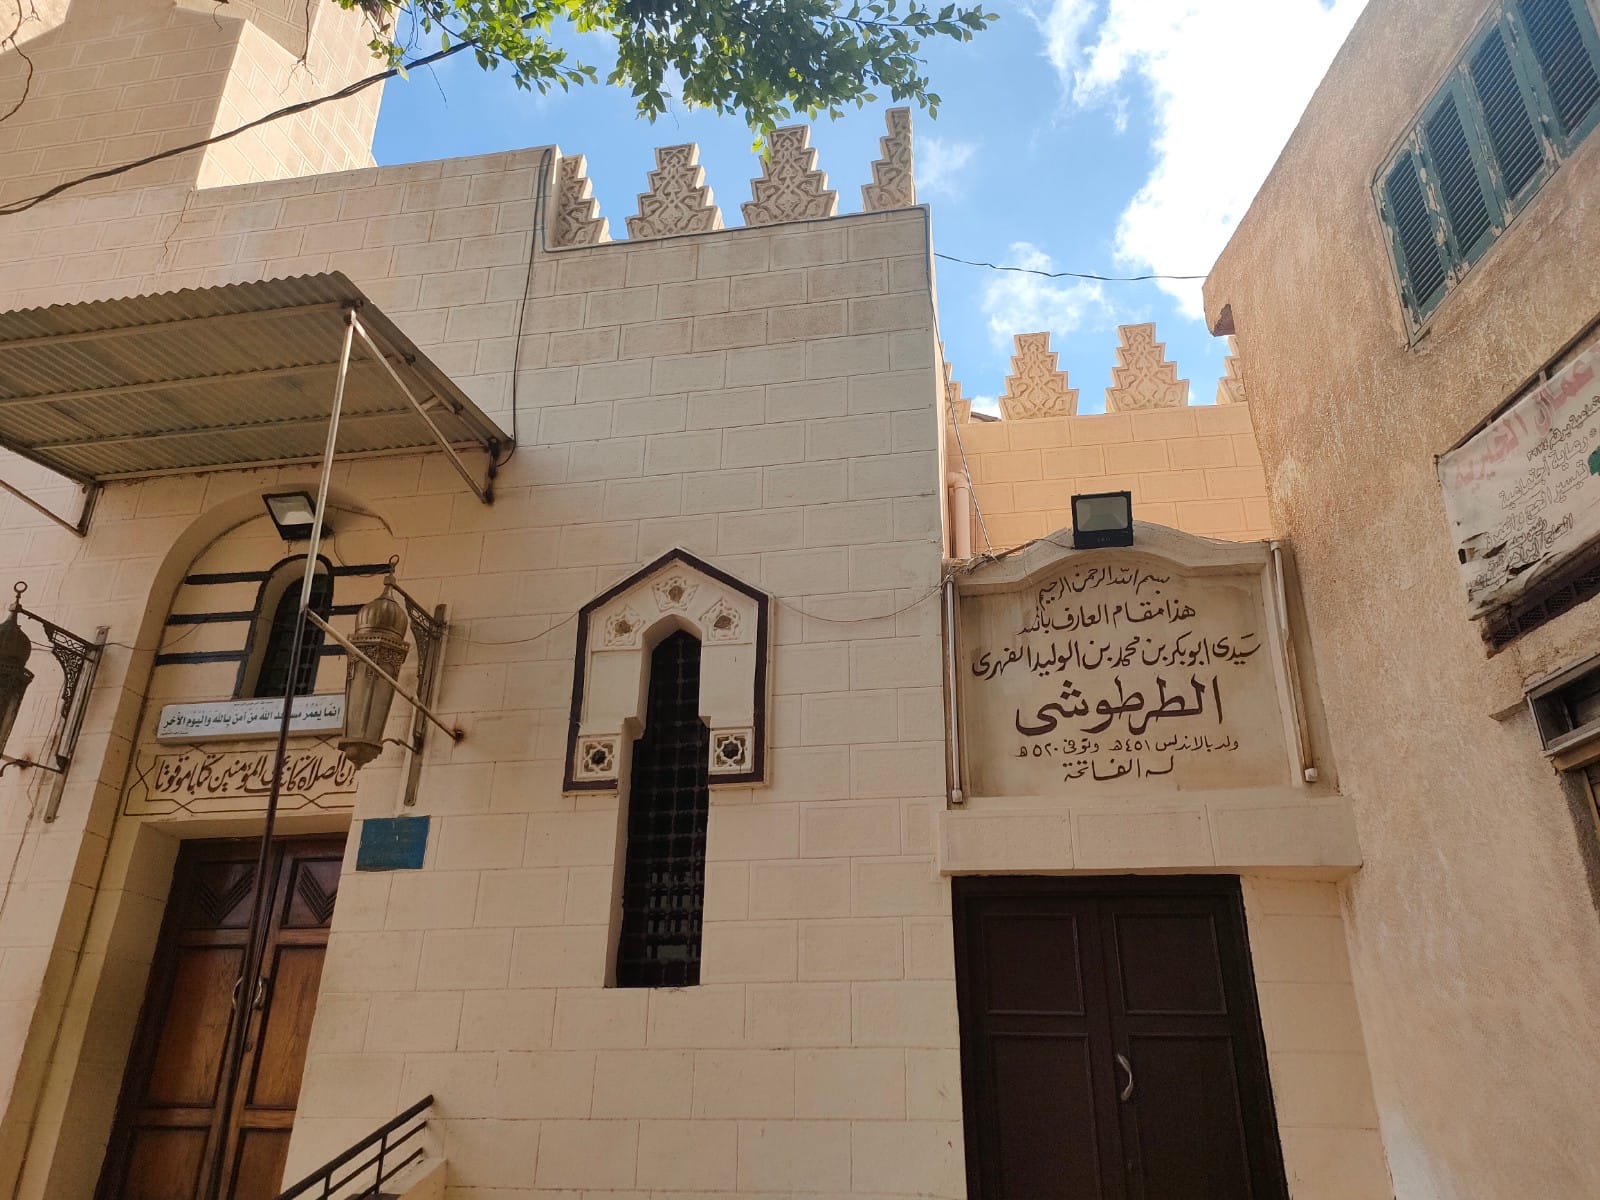 قصة الإمام "الطرطوشى" مؤسس مدرسة الفقه منذ 900 سنة فى الإسكندرية.. فيديو وصور - اليوم السابع